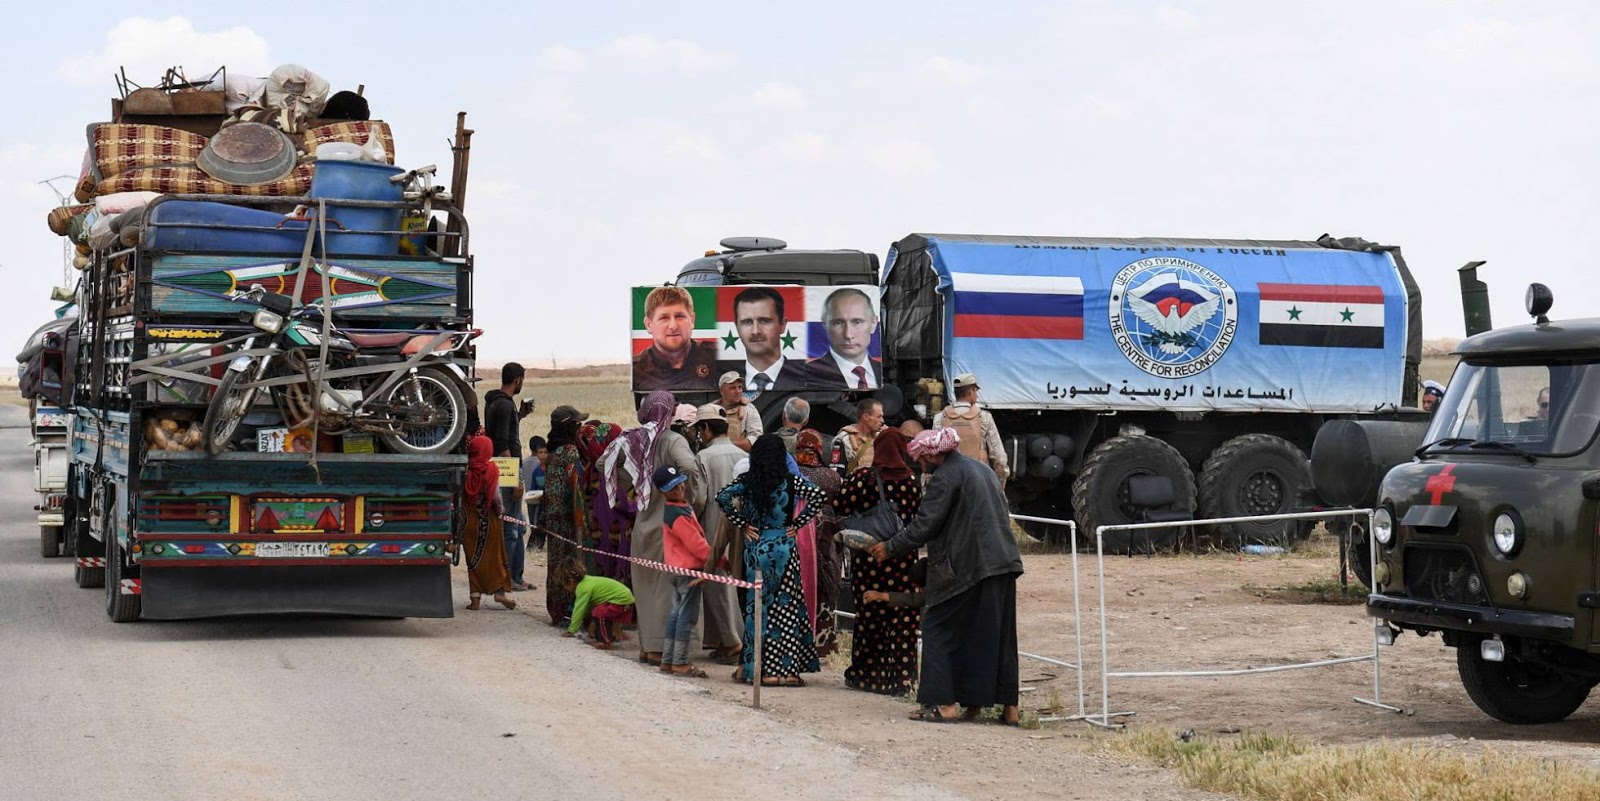 El avance del régimen sirio provoca una oleada de desplazados sin precedentes